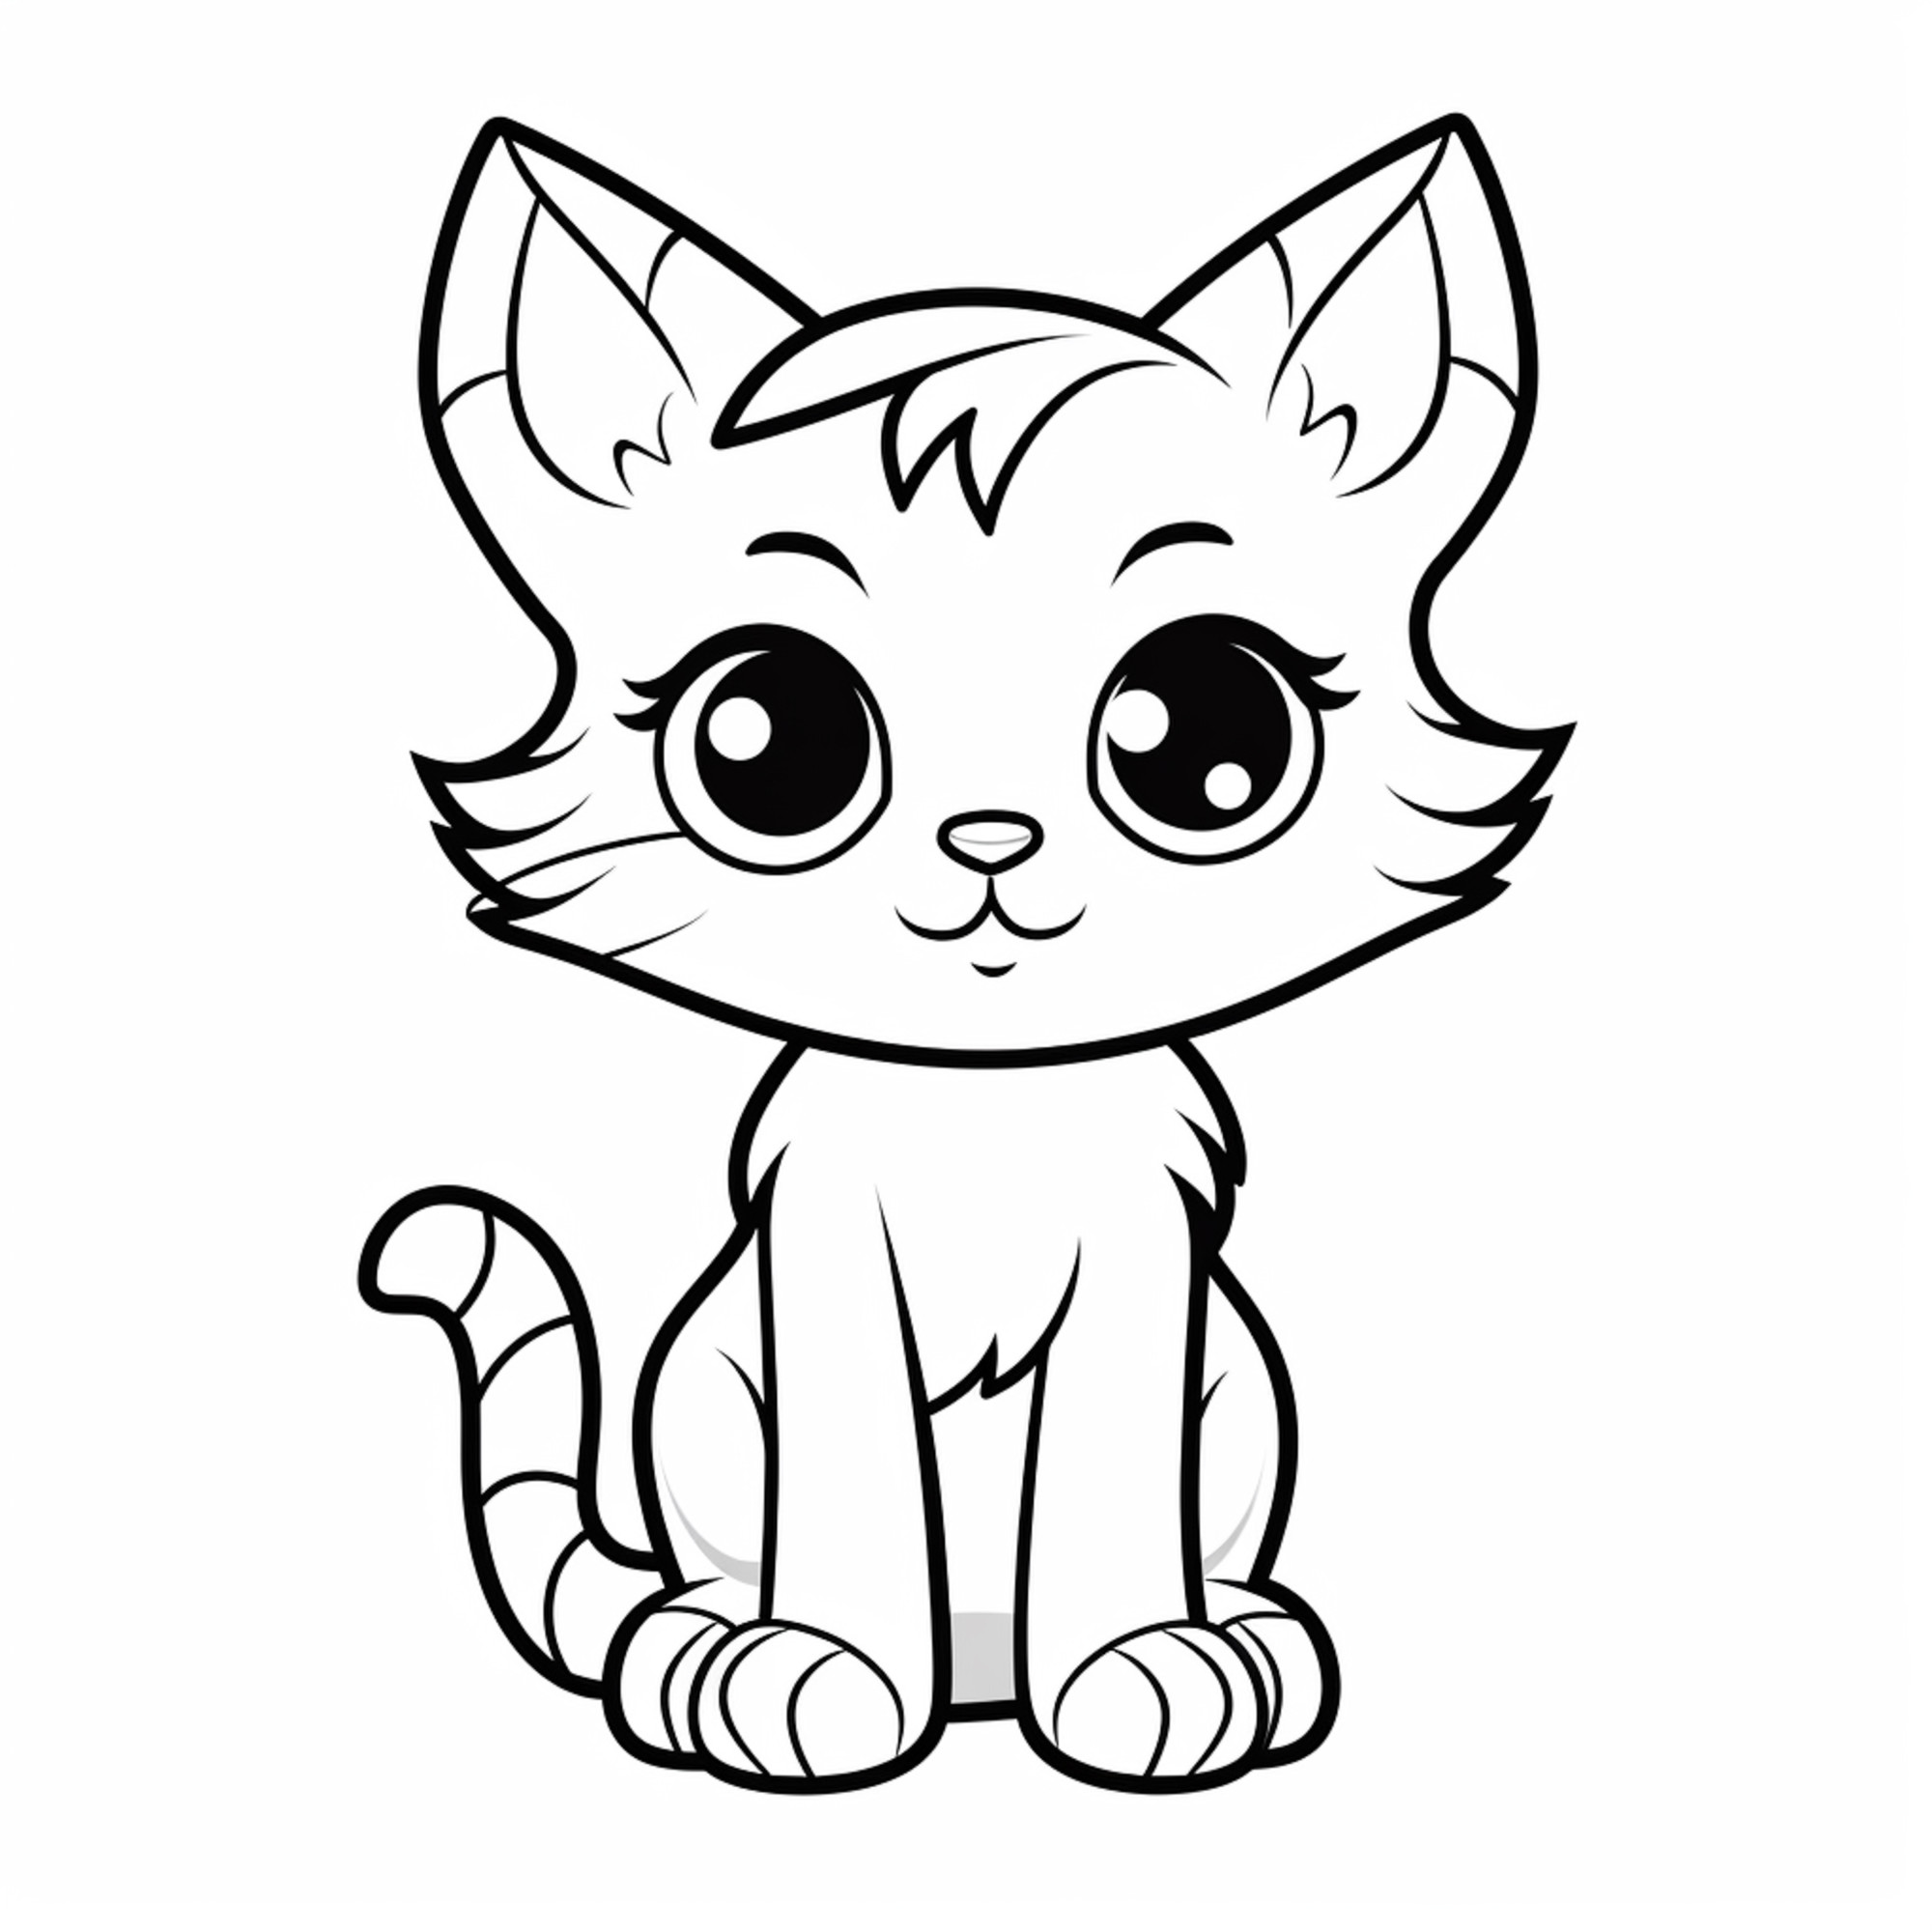 Раскраска для детей: котенок с пушистой мордочкой